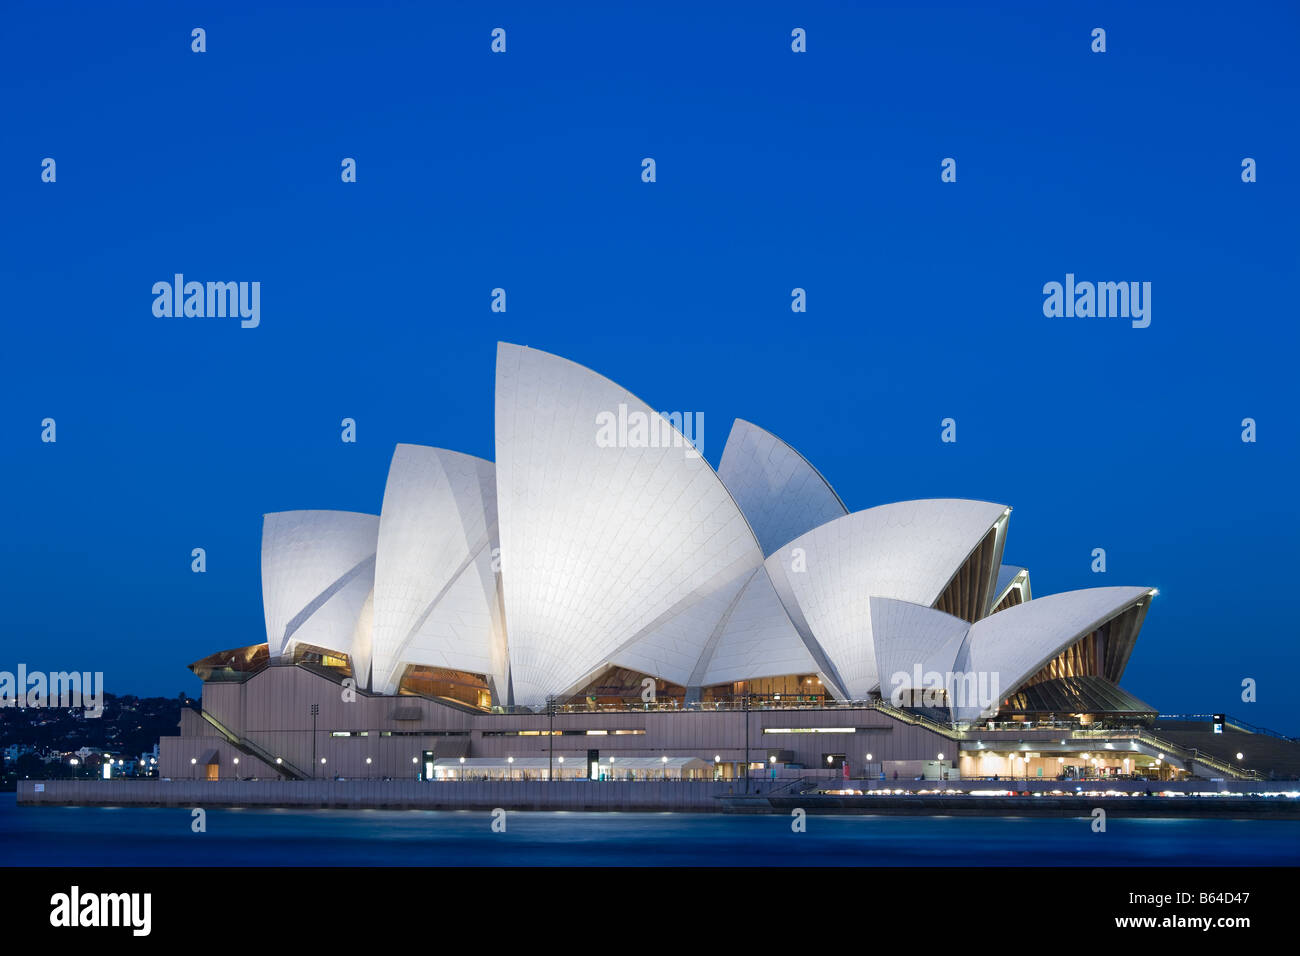 Sidney australia immagini e fotografie stock ad alta risoluzione - Alamy